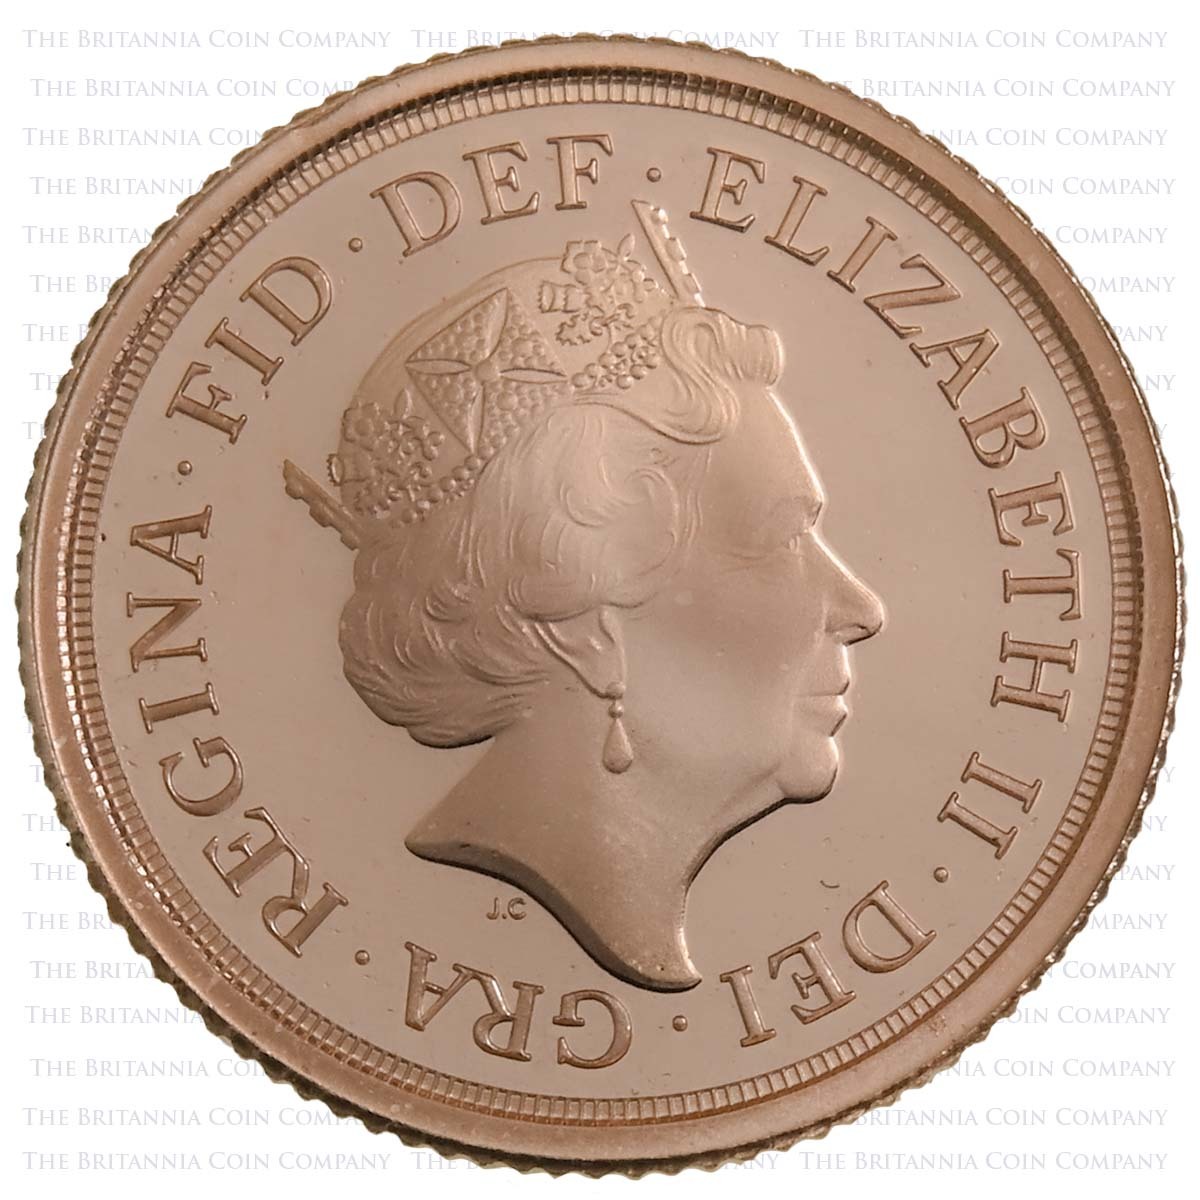 SV419T 2019 Elizabeth II 4-Coin Proof Sovereign Set Quarter Sovereign Obverse